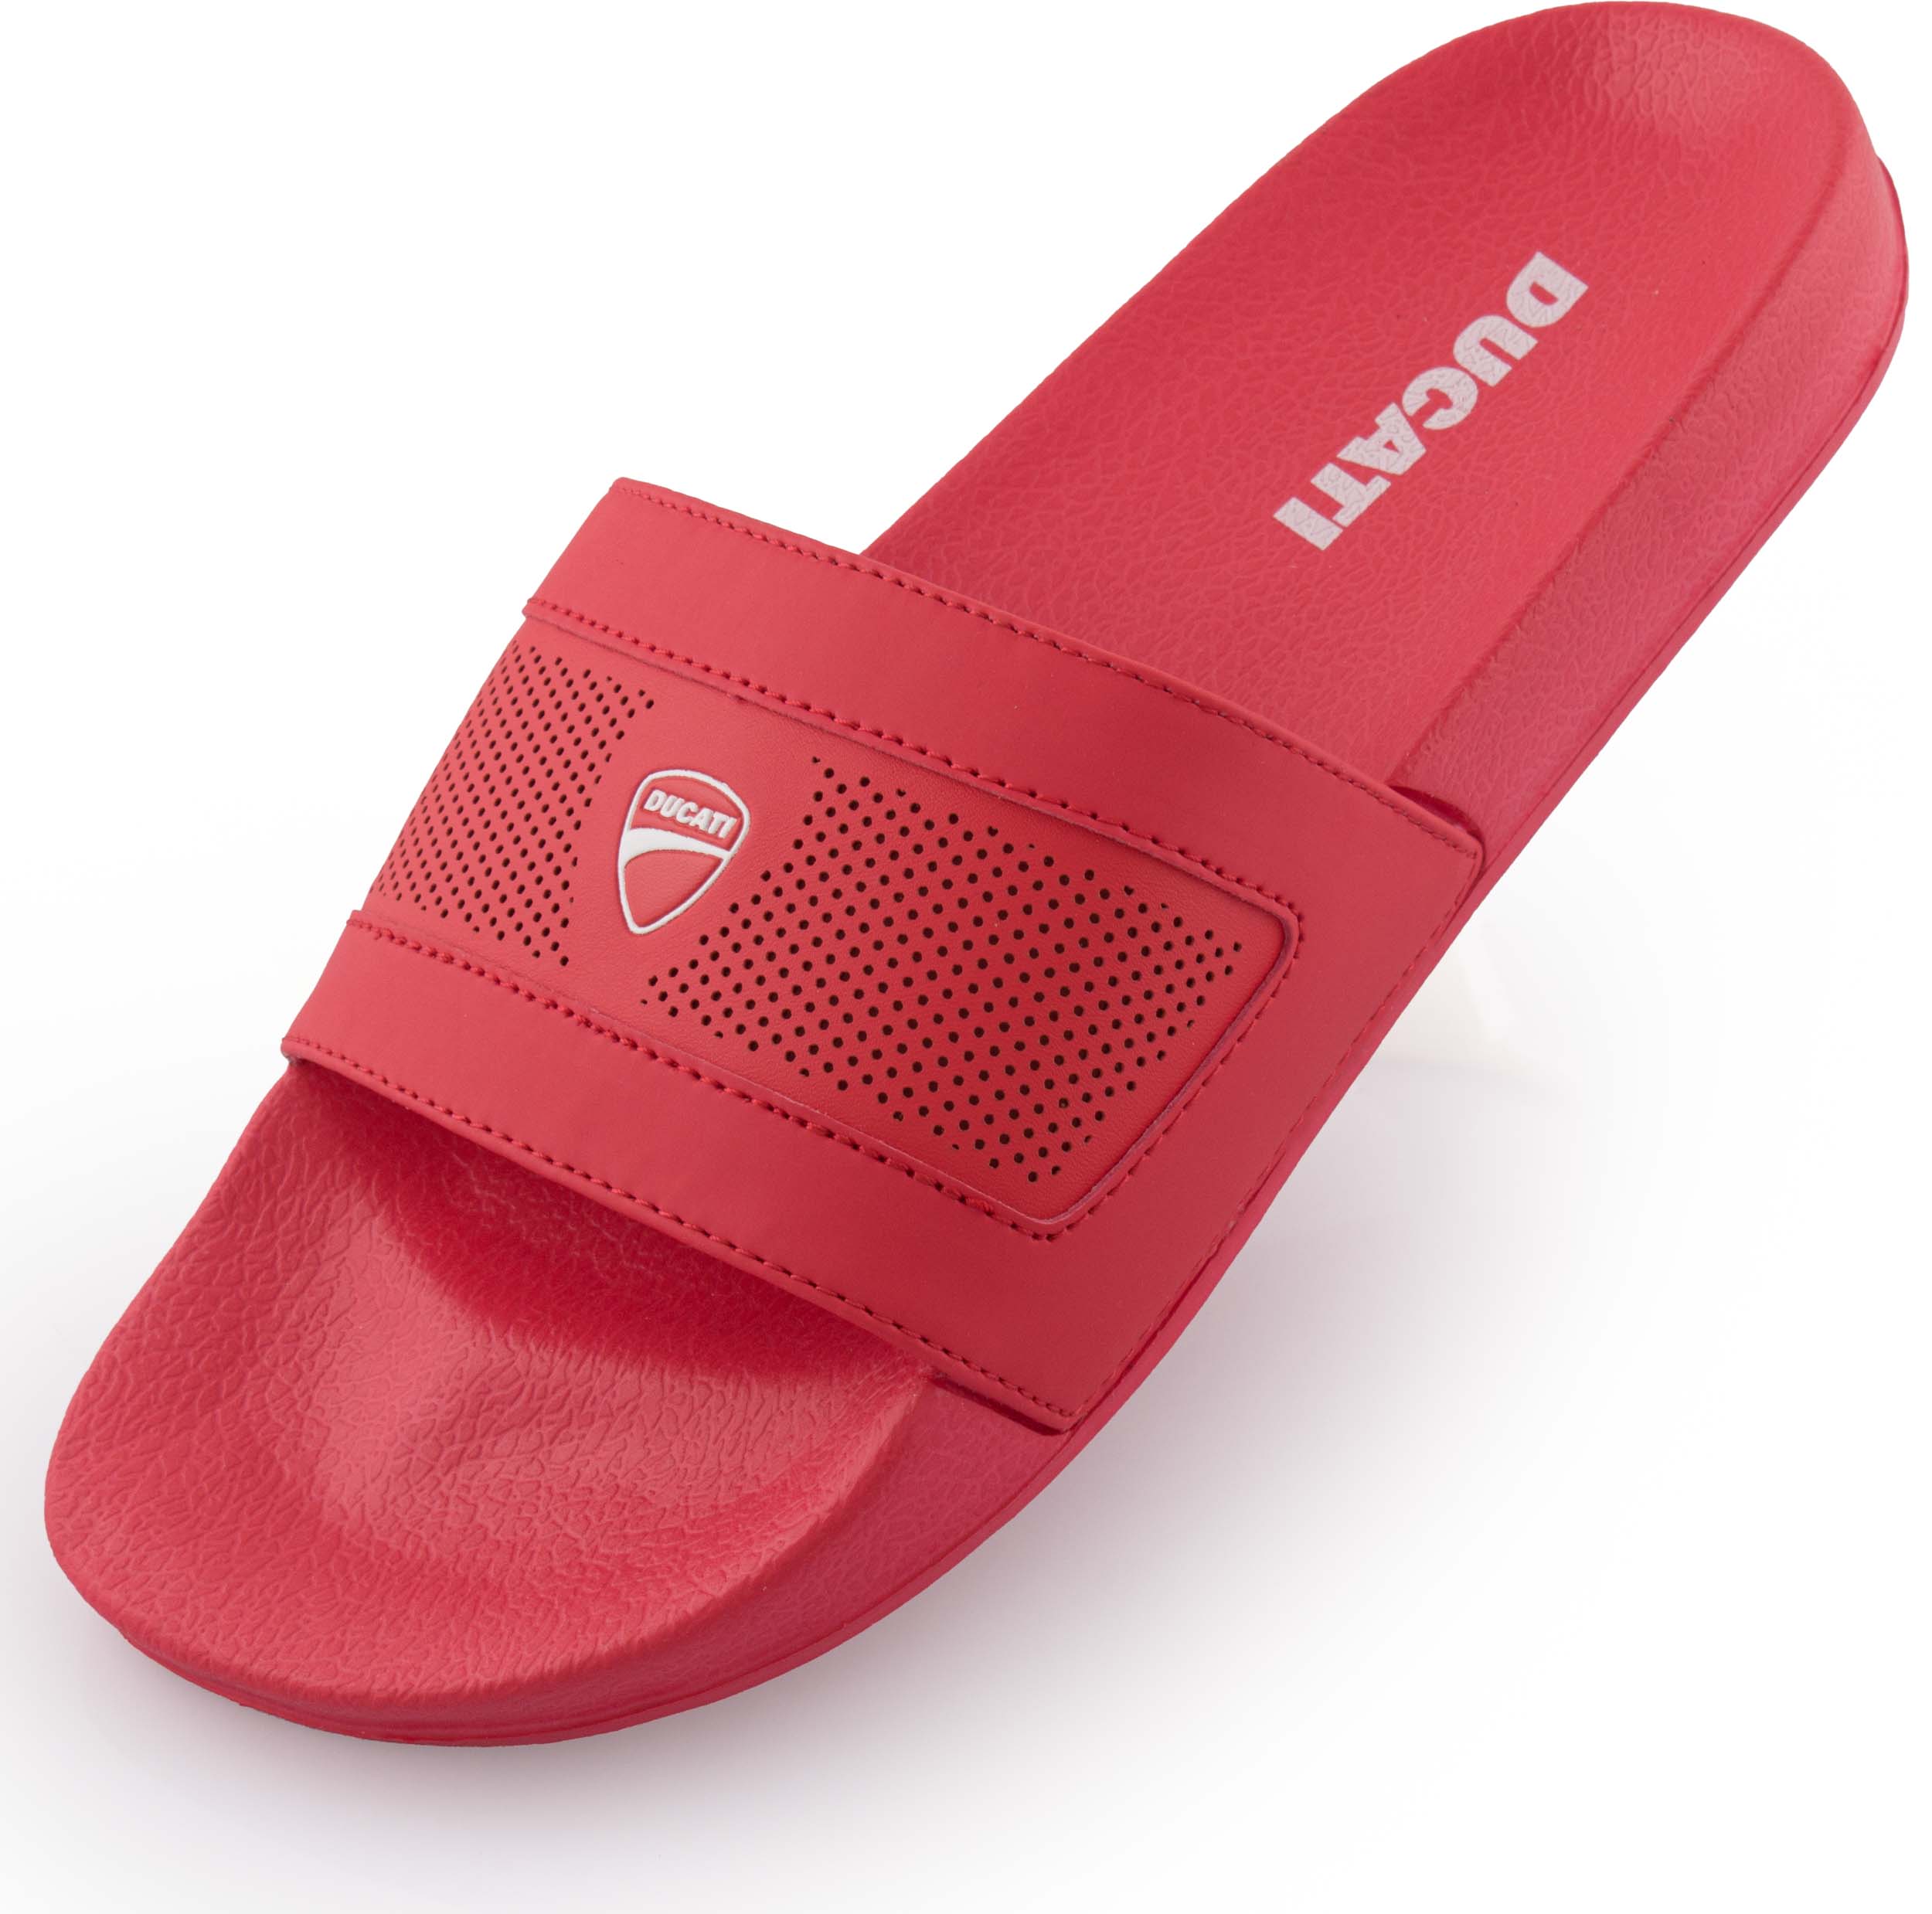 Pantofle Ducati Red|44